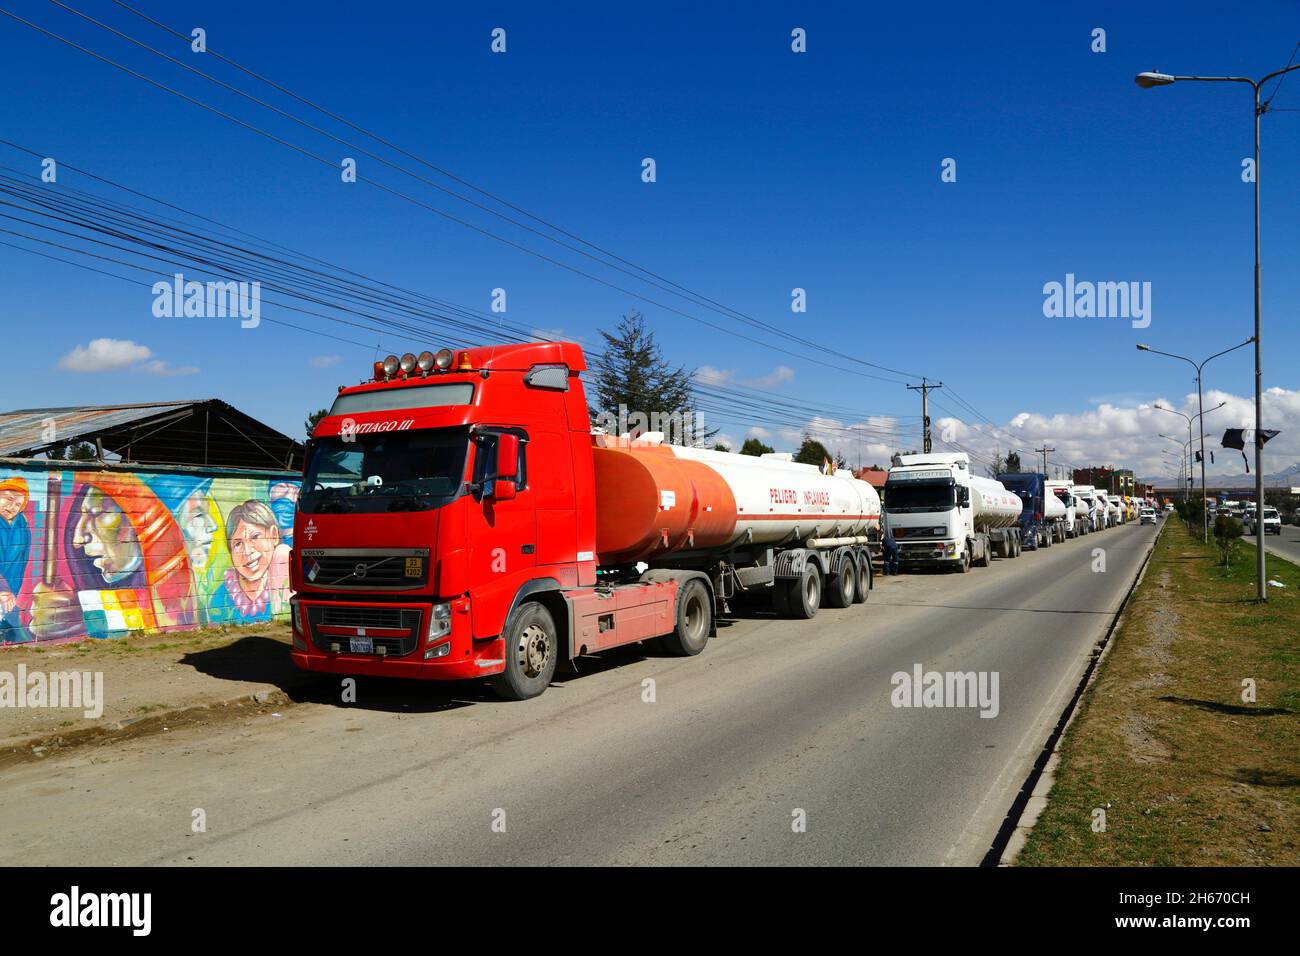 Senkata, El Alto, Bolivien. 13.. November 2021. Tankwagen stehen an der Av 6 de Marzo / Camino Oruro in El Alto vor der Senkata-Brennstofffabrik an. Yacimientos Petrolíferos Fiscales Bolivianos (YPFB, Boliviens staatliches Erdöl-/Kohlenwasserstoffunternehmen) verfügt hier über eine große Raffinerie und Lageranlage: Sie ist auch das Vertriebszentrum für die Versorgung von La Paz, El Alto und der Umgebung. Stockfoto